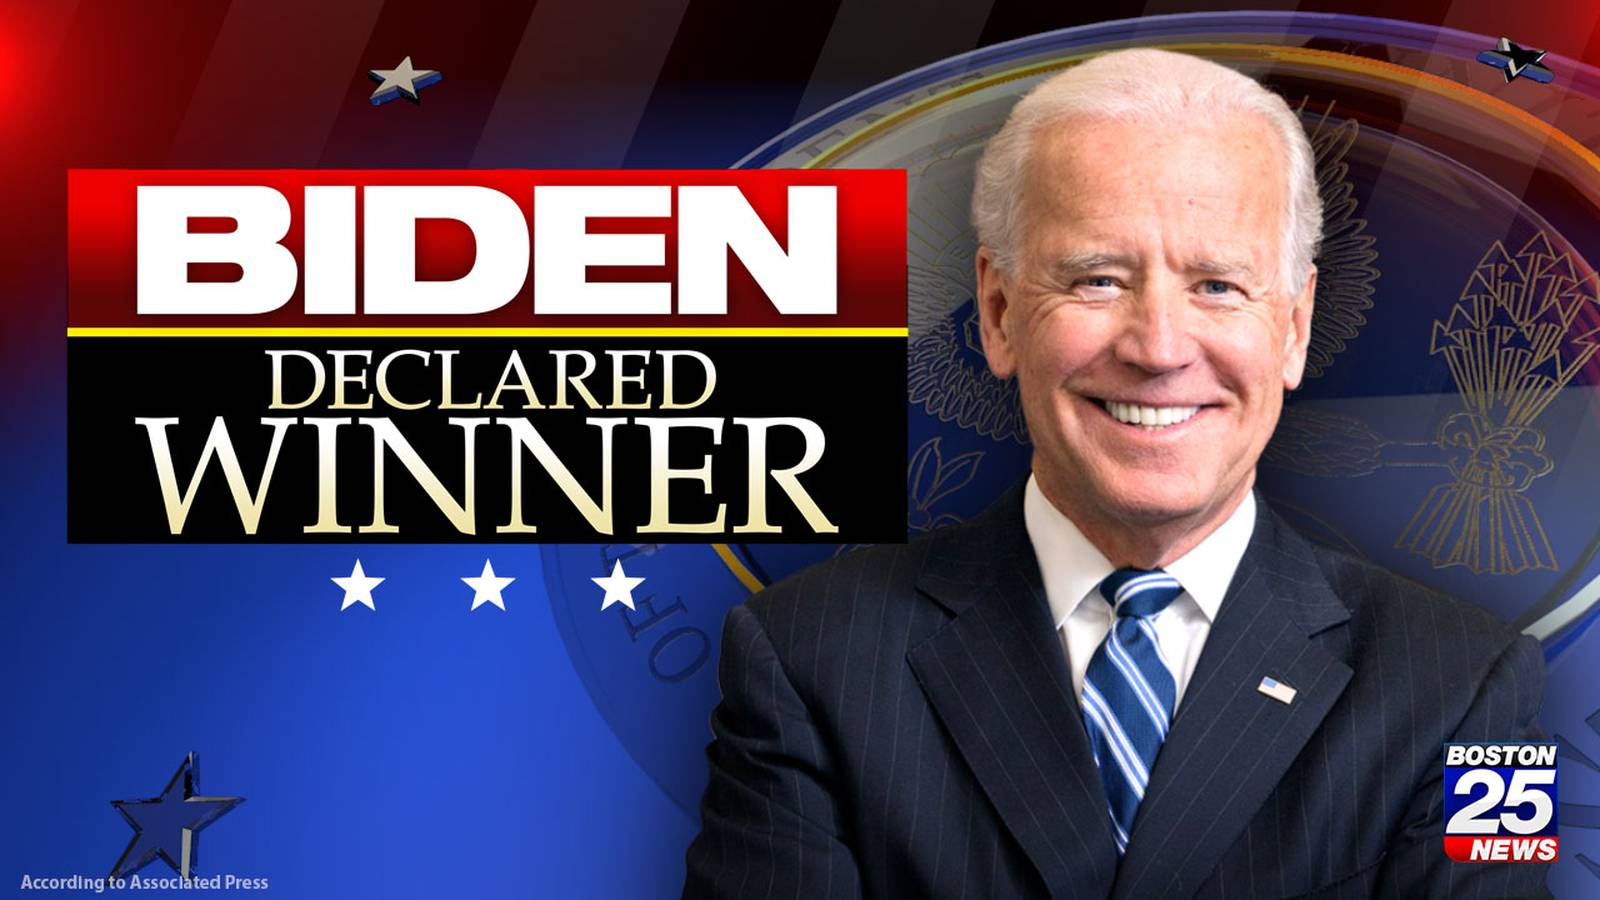 AP Joe Biden declared winner of 2020 presidential election Boston 25